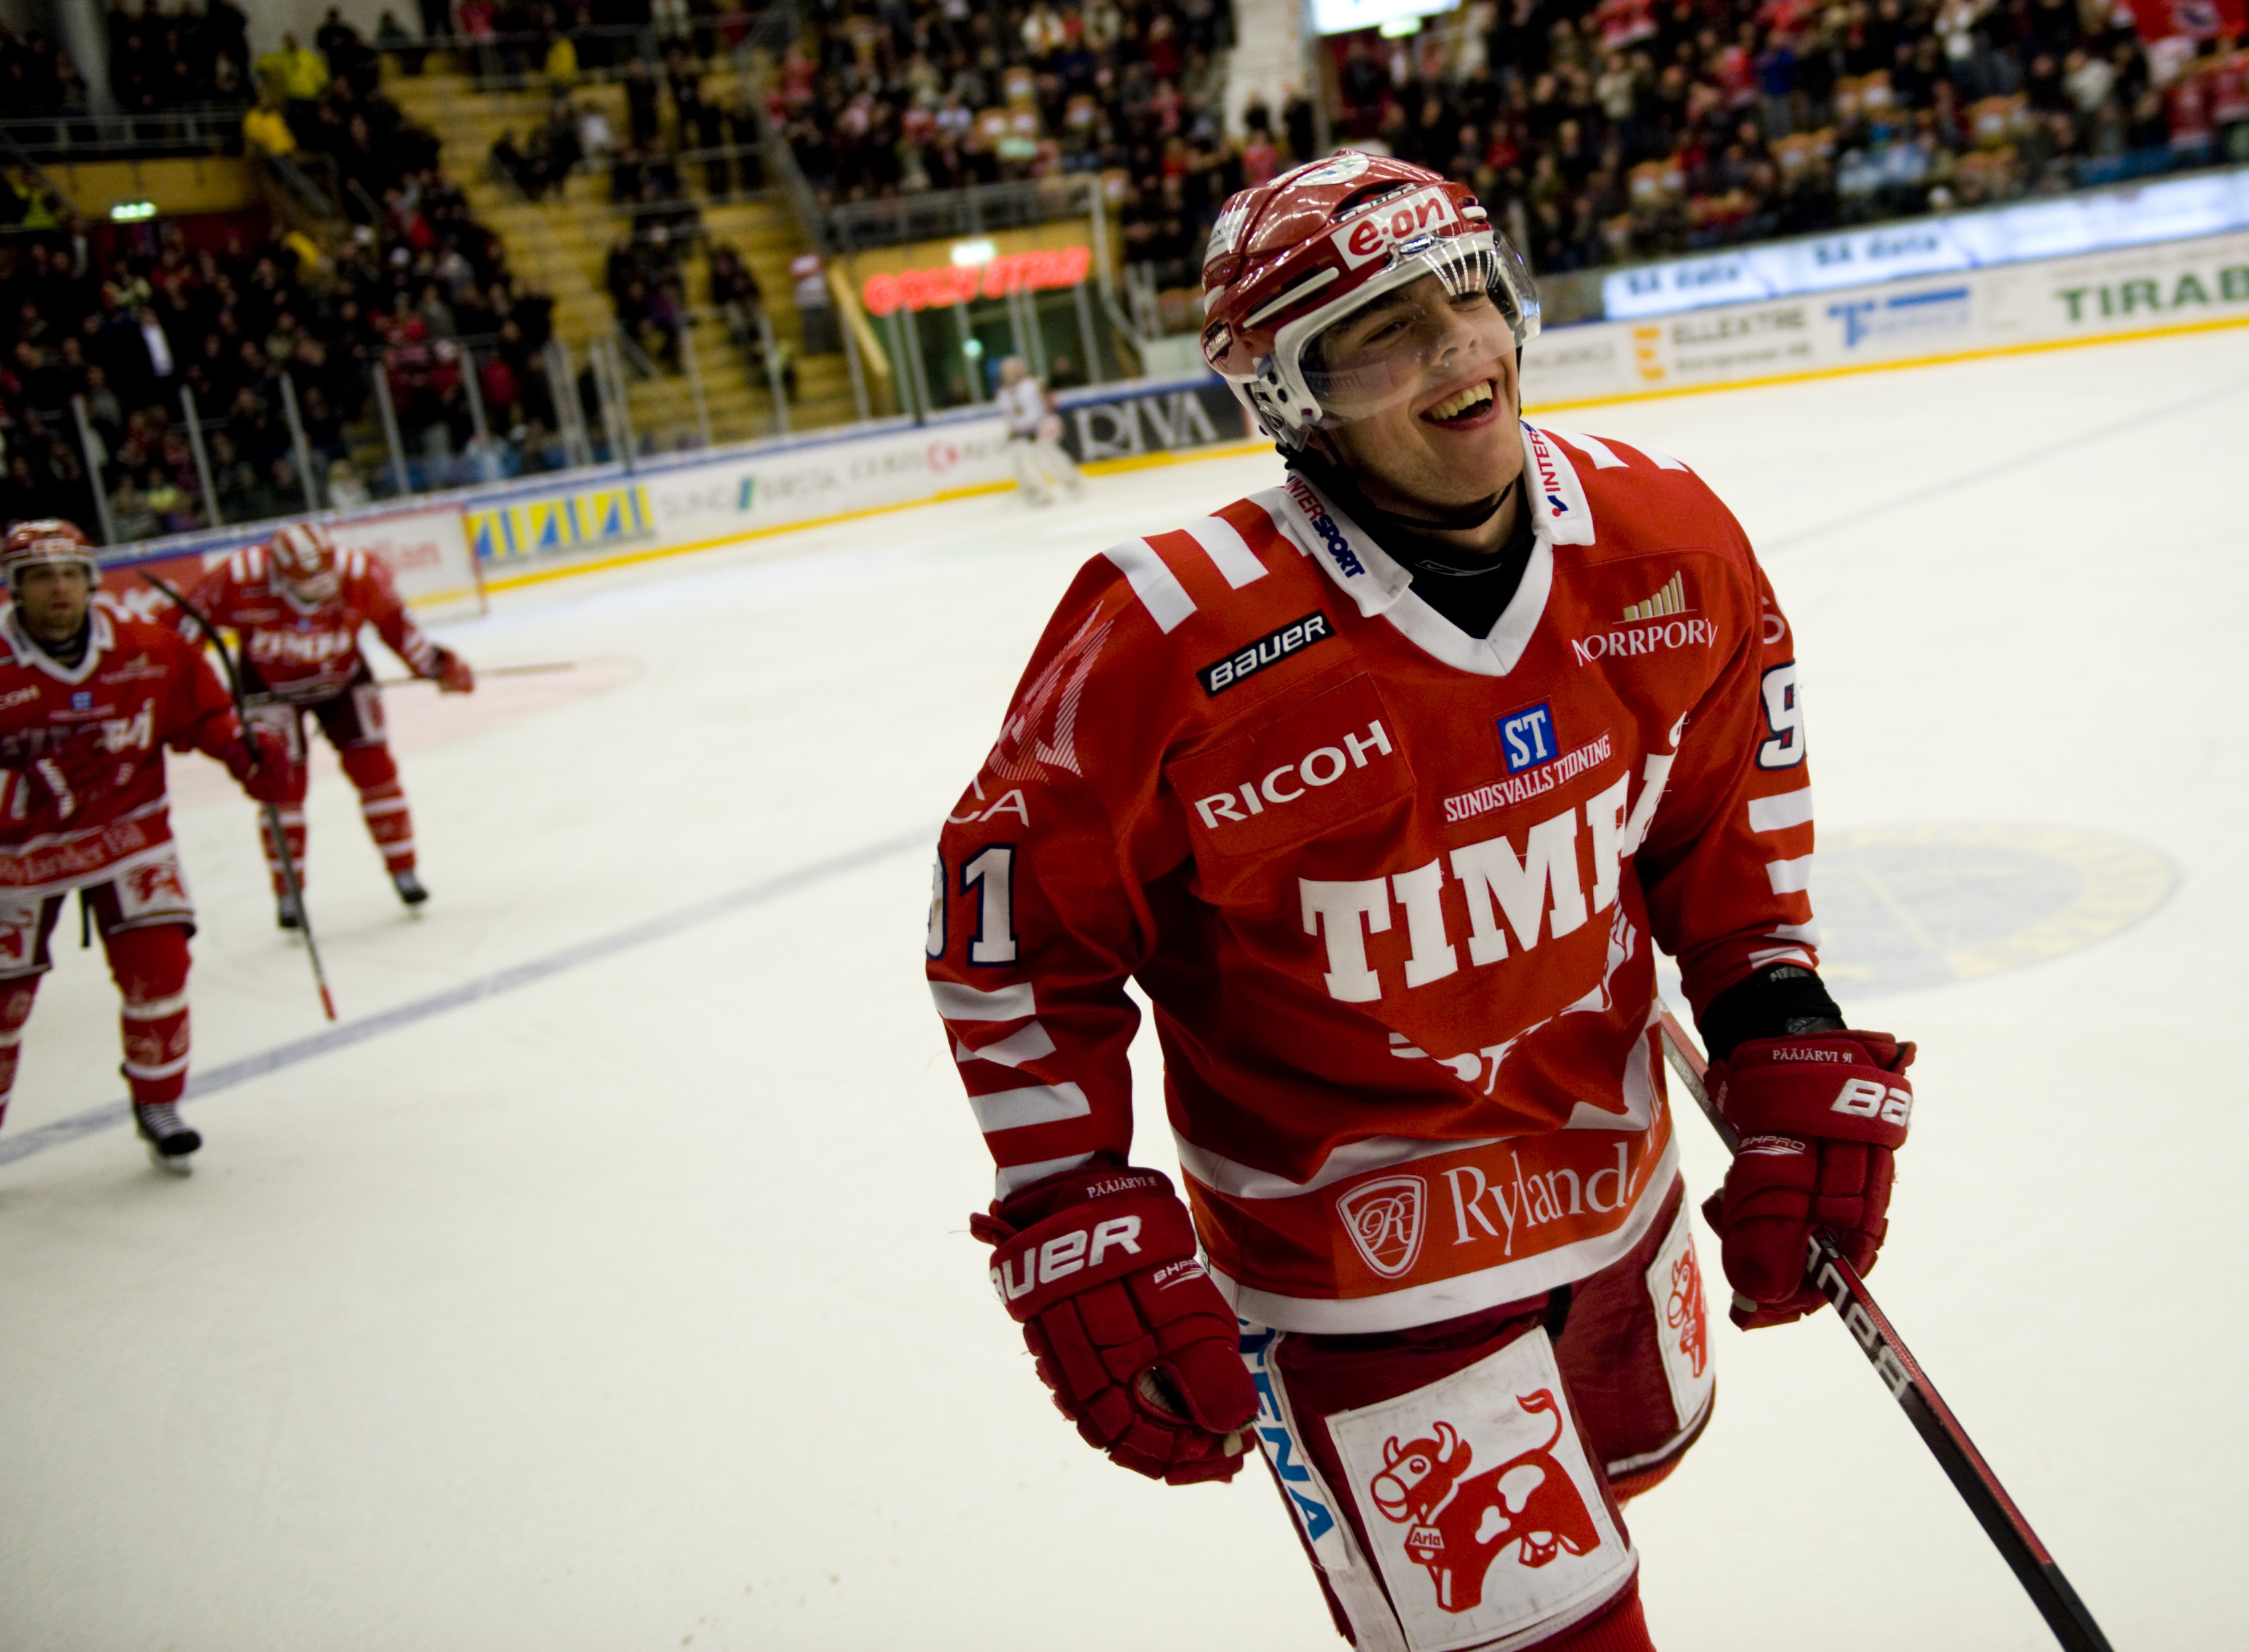 Kommer det att bli ytterligare en säsong i elitserien för Magnus Pääjärvi Svensson.